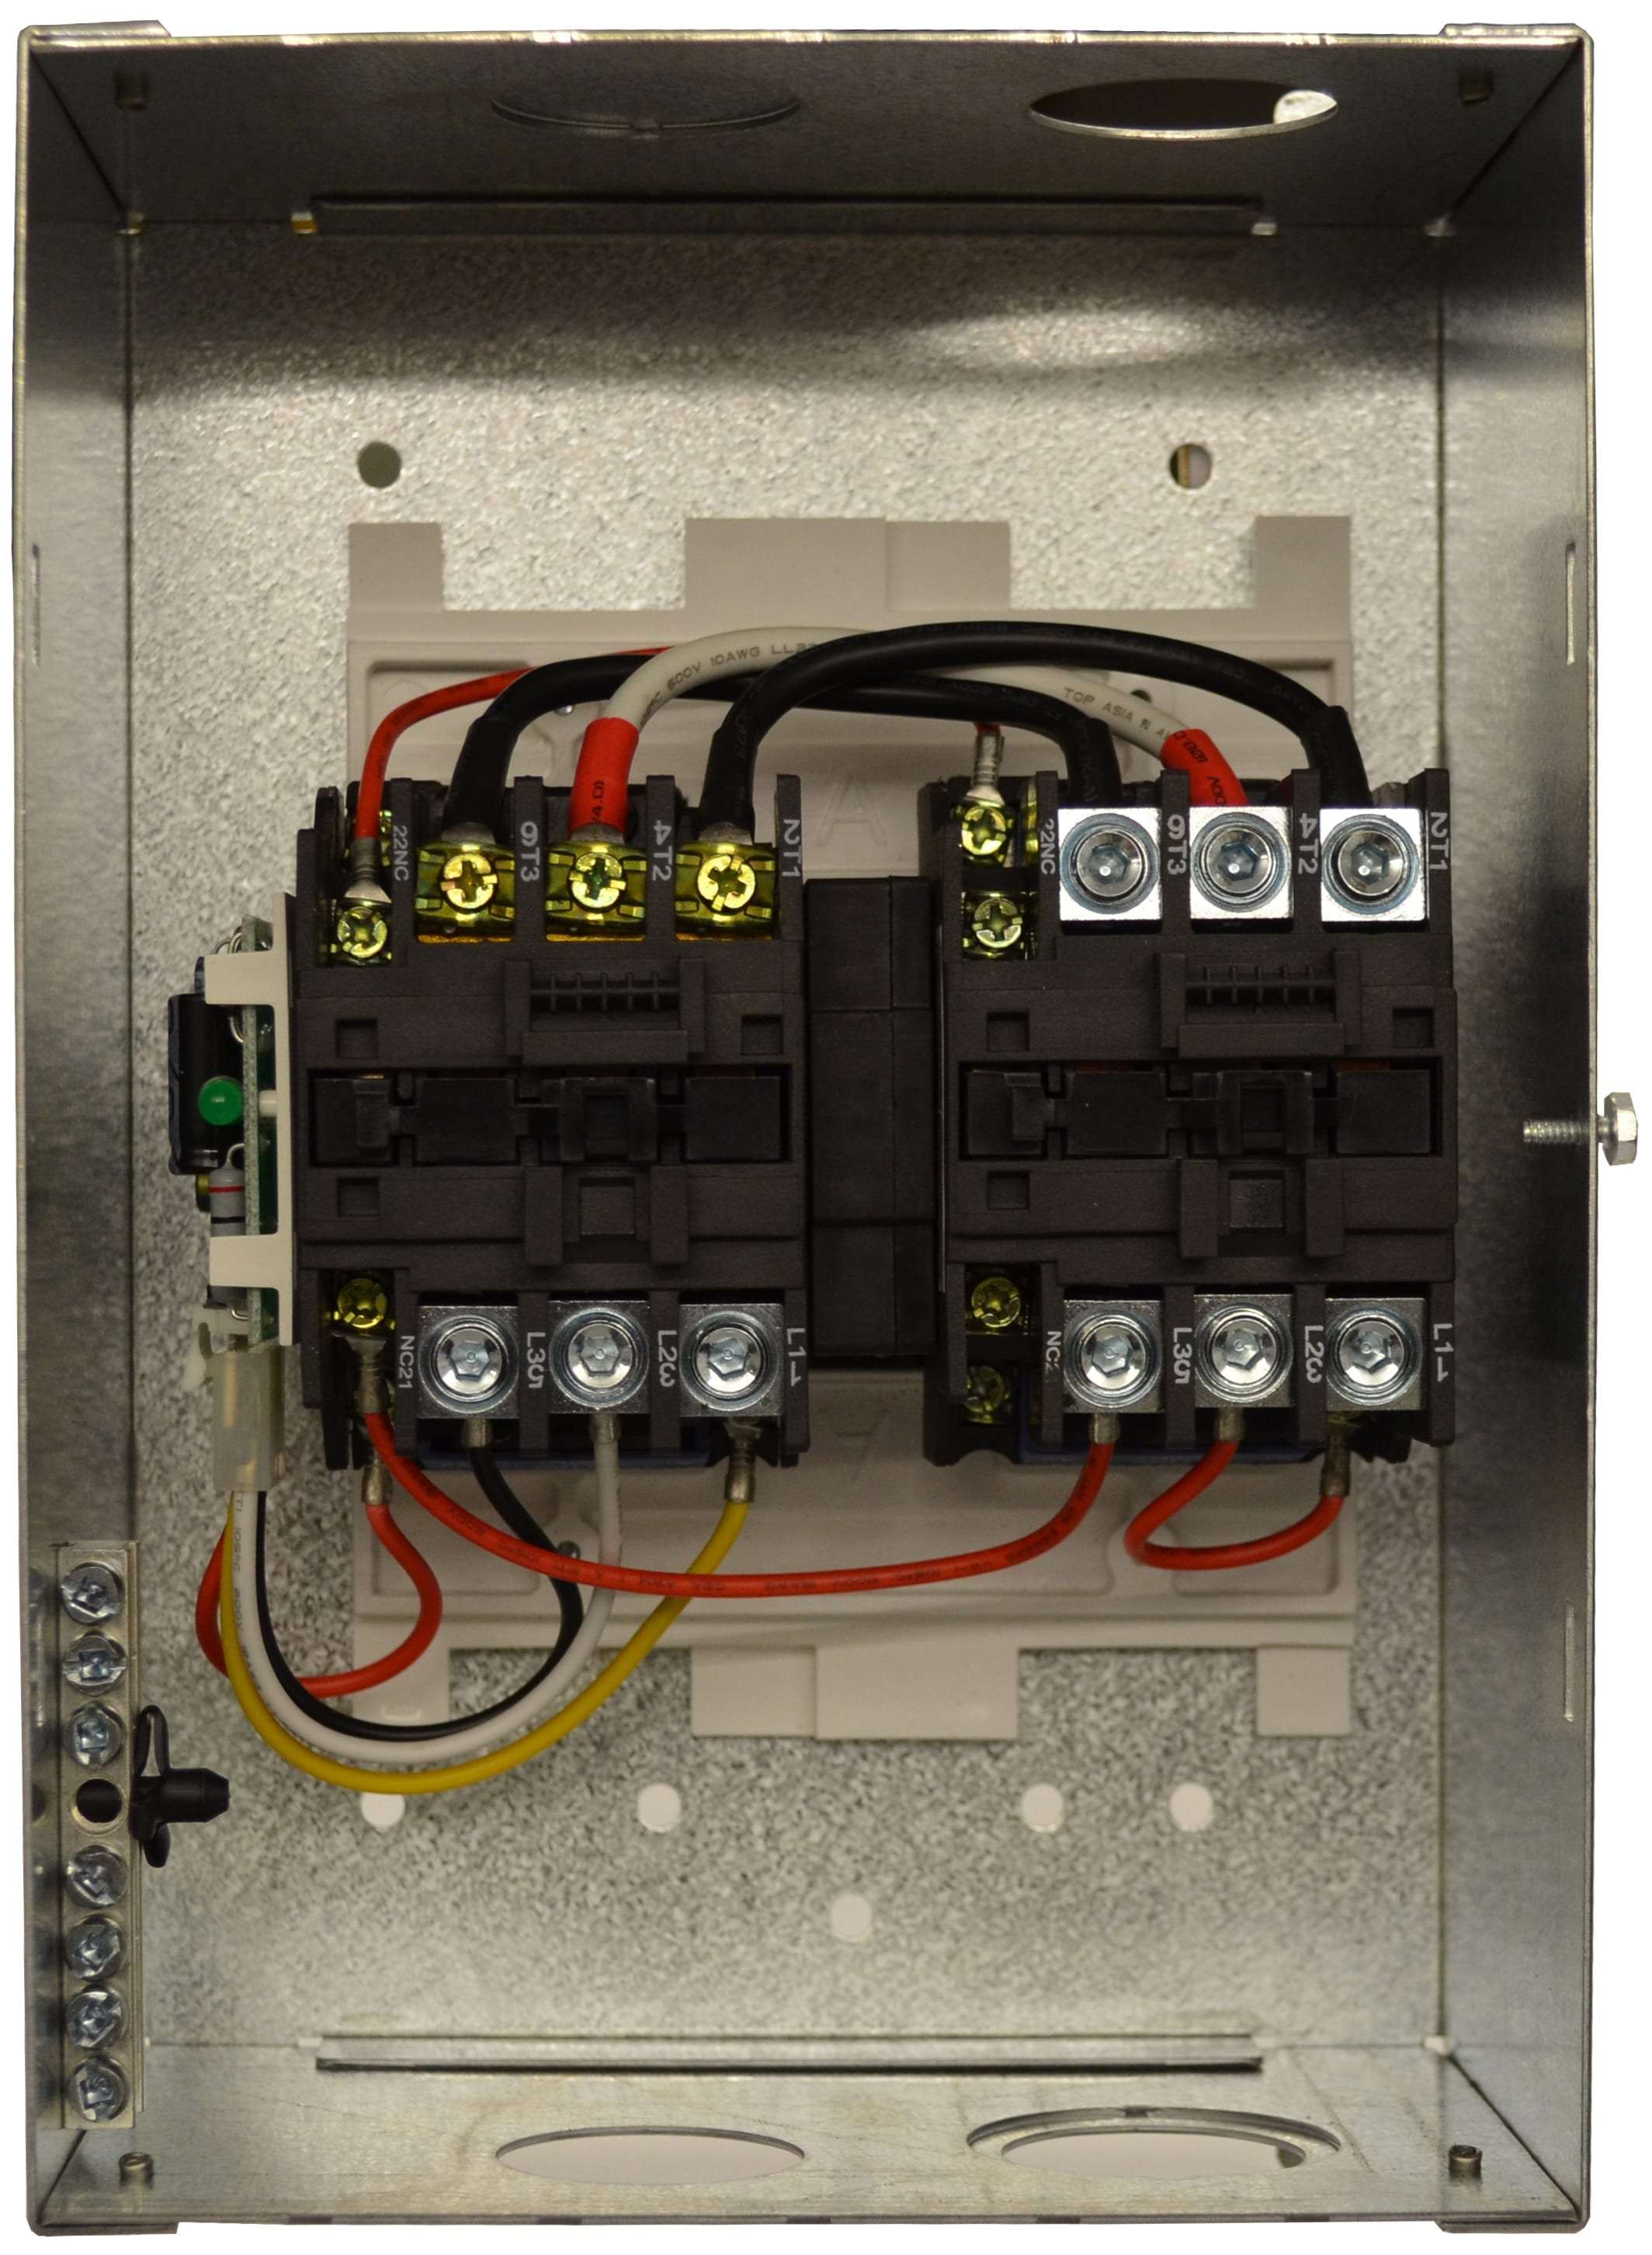 50 Amp Transfer Switch | Go Power Bathroom Fan Wiring Diagram Go Power